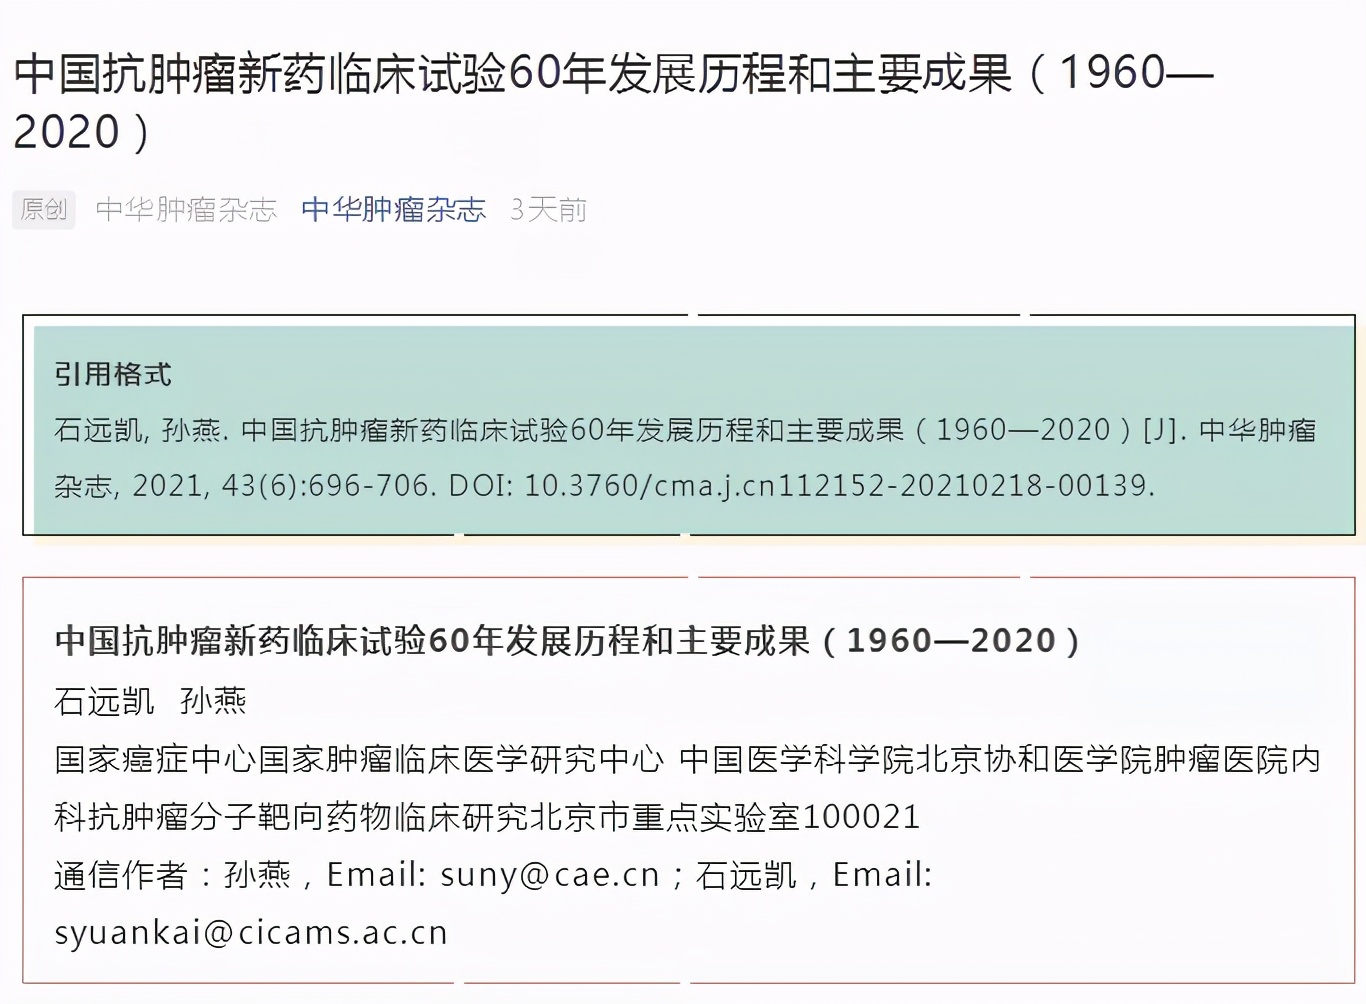 石药集团津优力被列入中国抗肿瘤新药临床试验60年主要成果